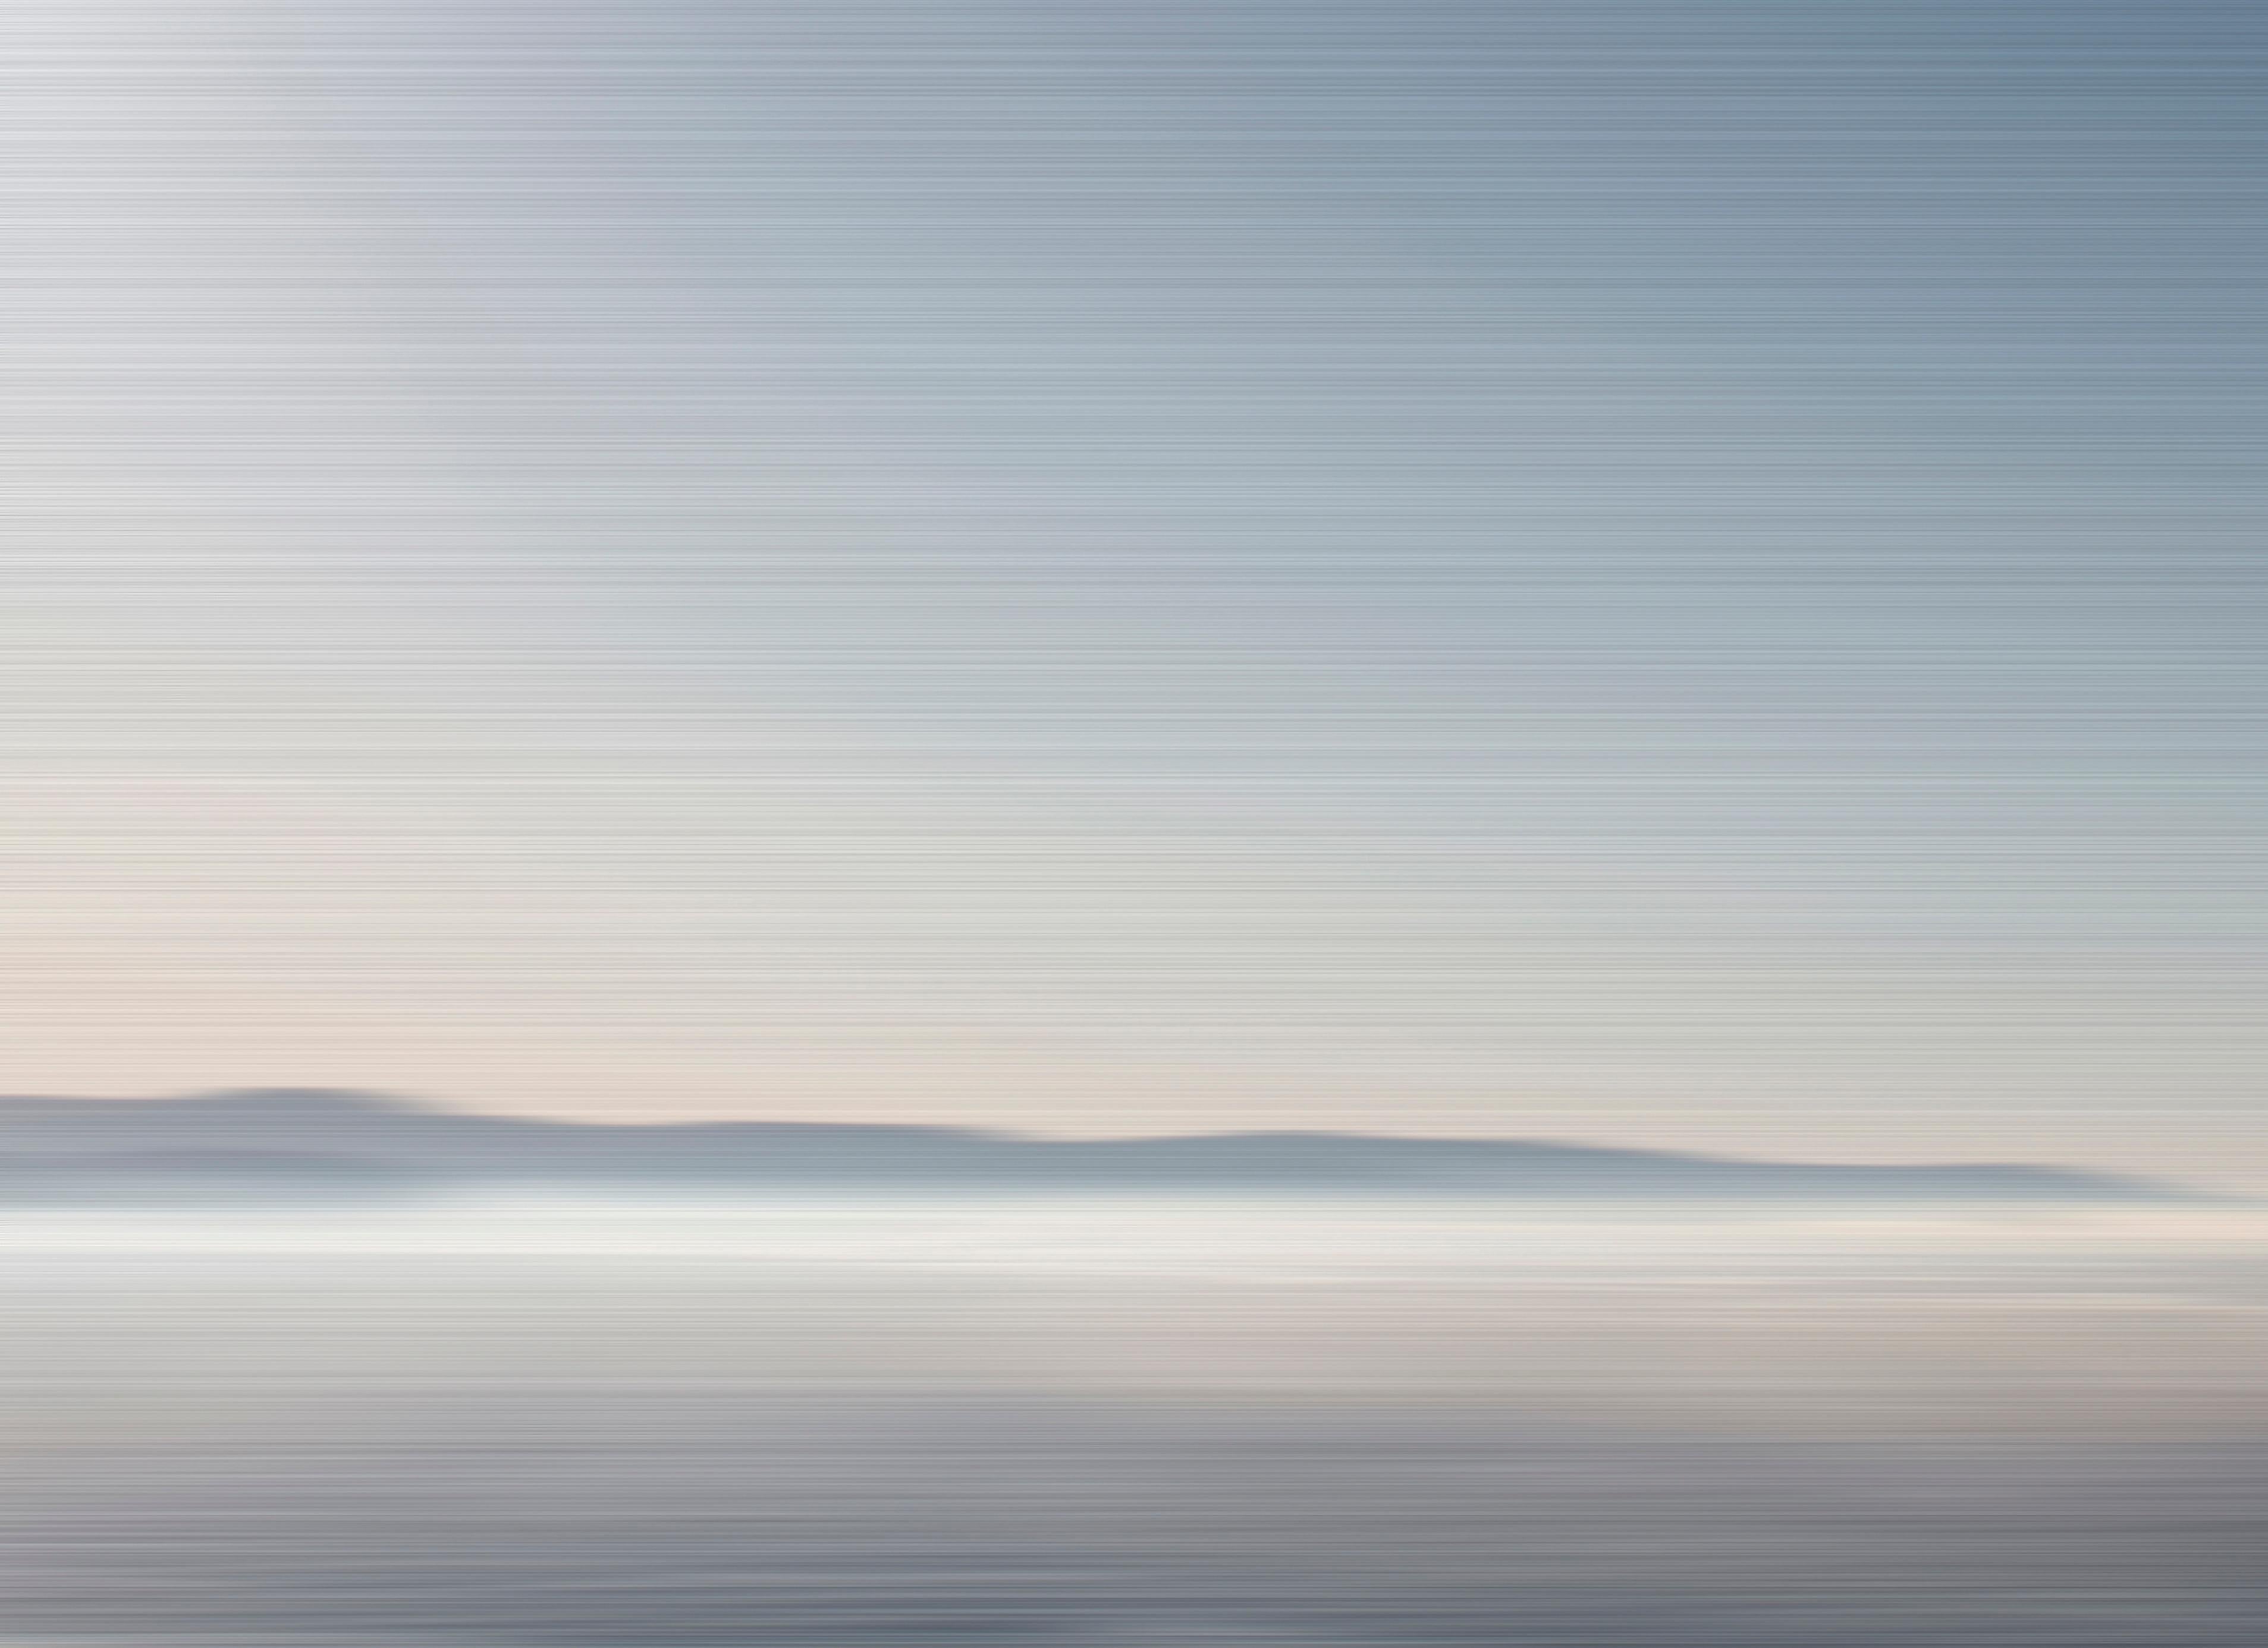 Misty Harbour - contemporain, paysage abstrait, photographie sur dibond - Gris Landscape Photograph par Etienne Labbe